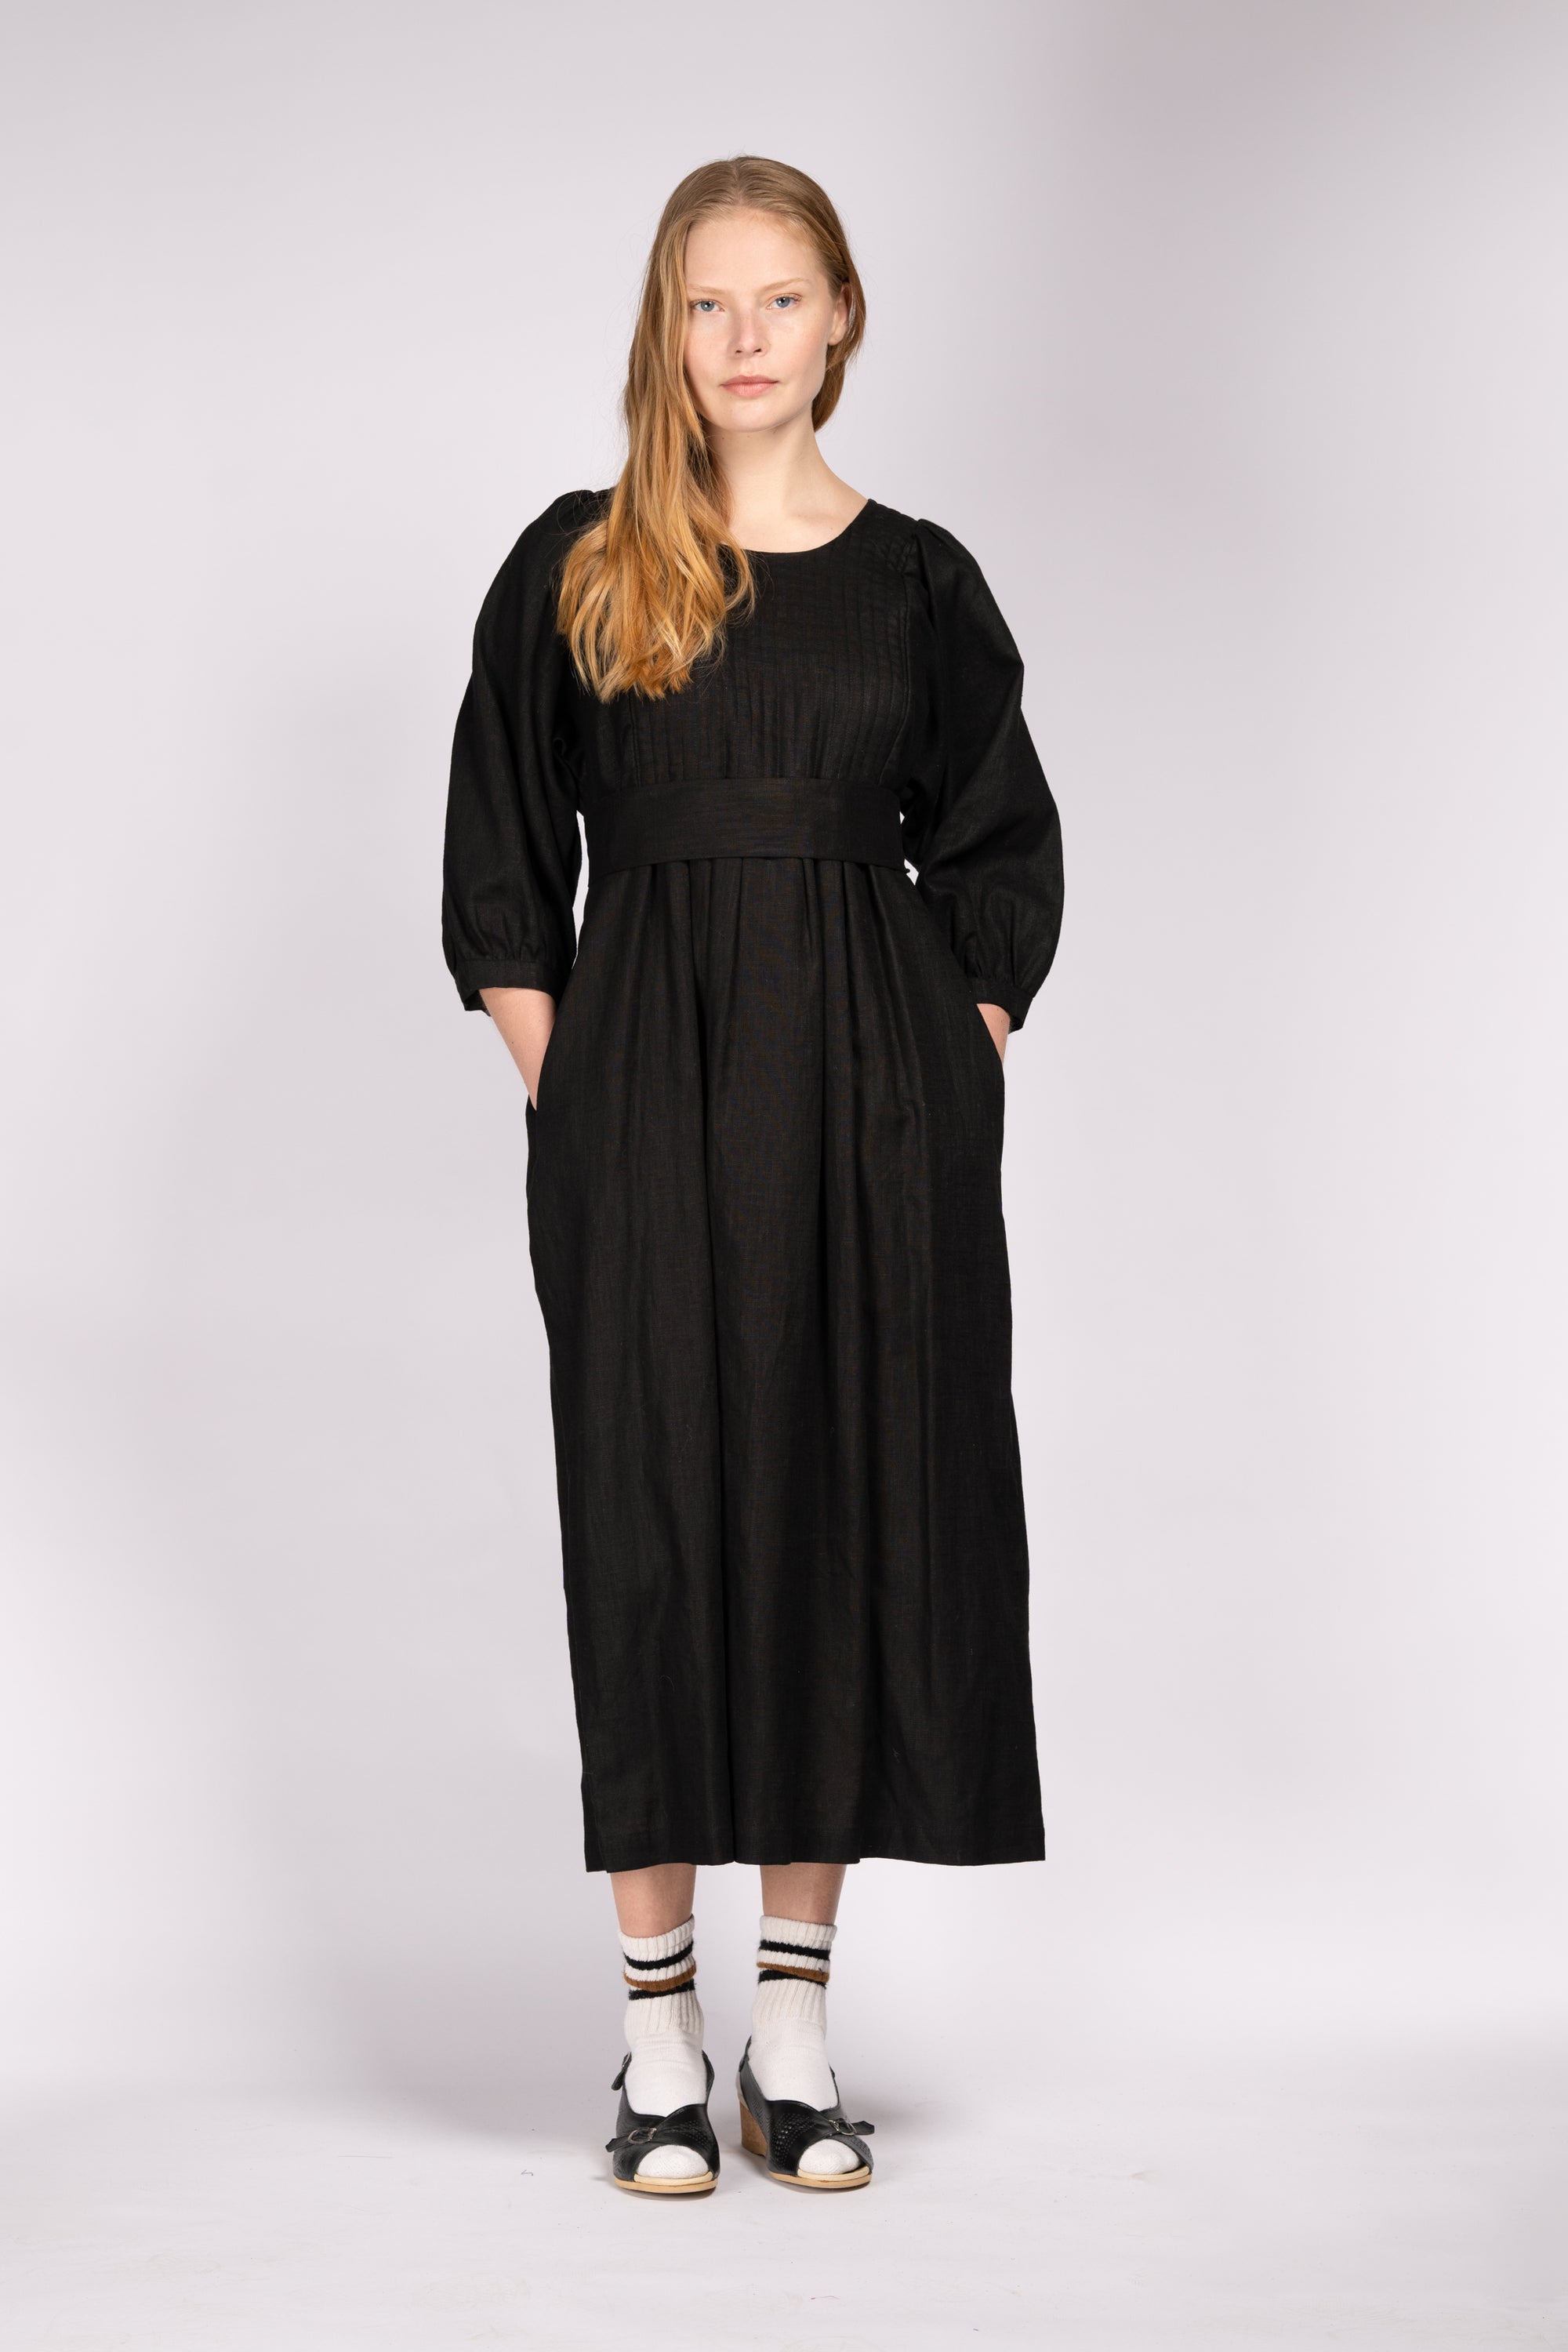 Quilt Dress - Black Linen